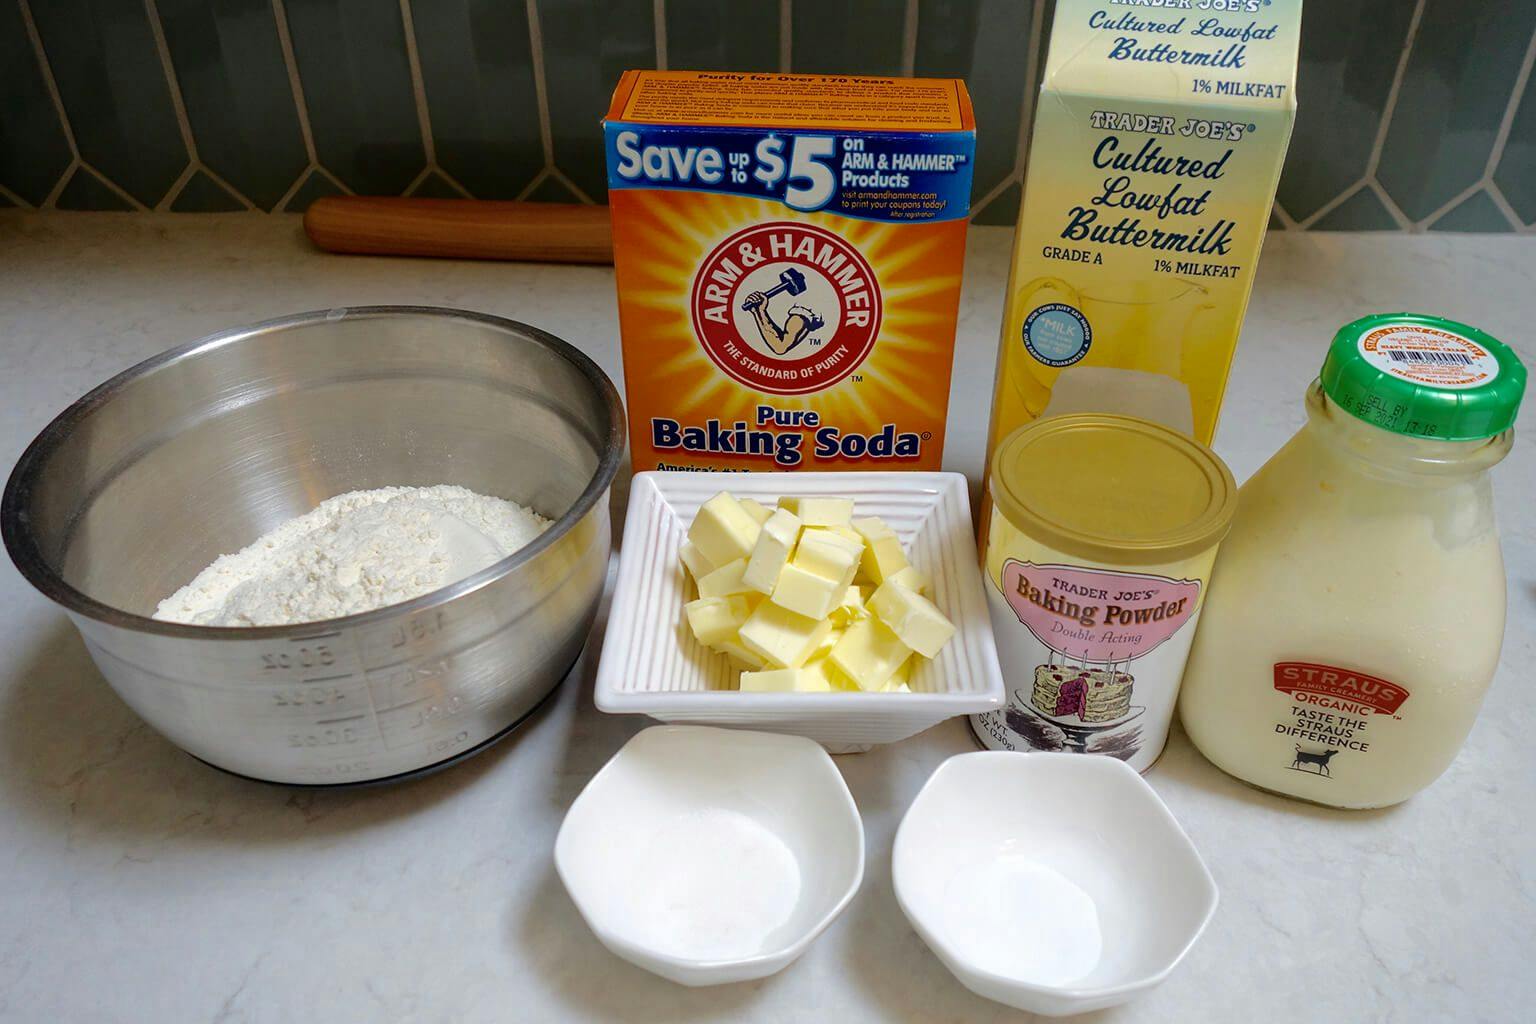 Buttermilk biscuits ingredients